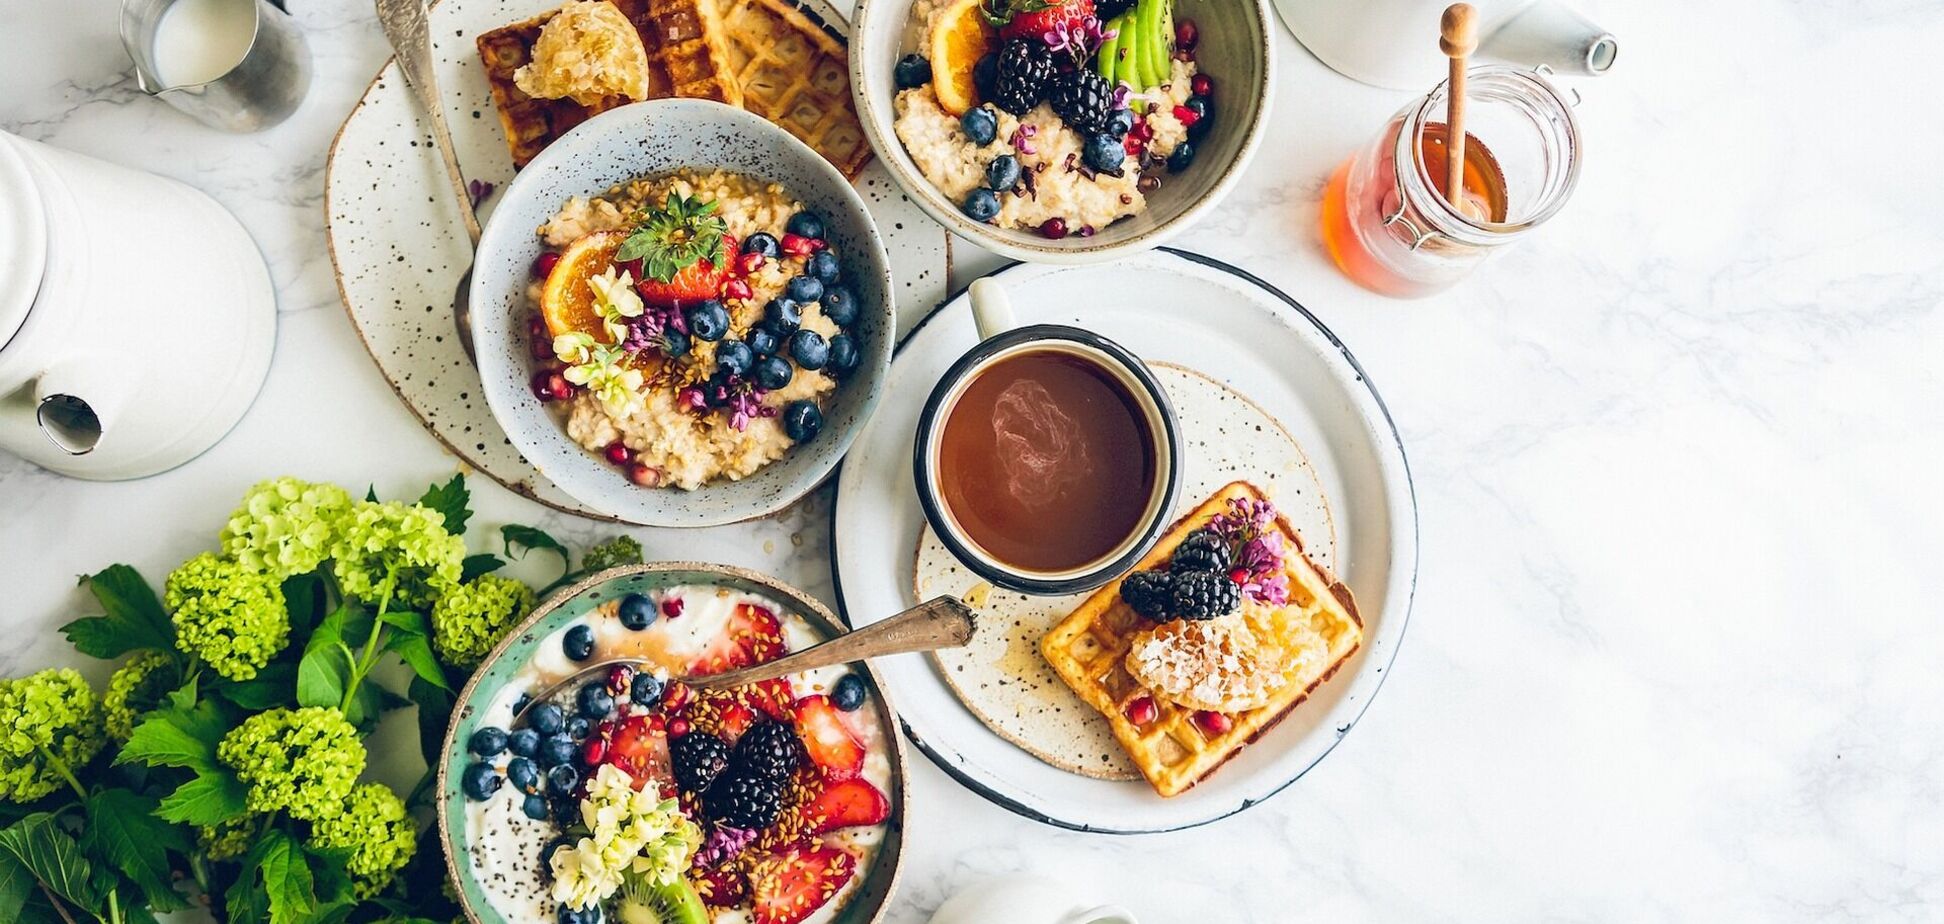 Не переносьте сніданки на обід: може погано позначитися на вашому здоров'ї